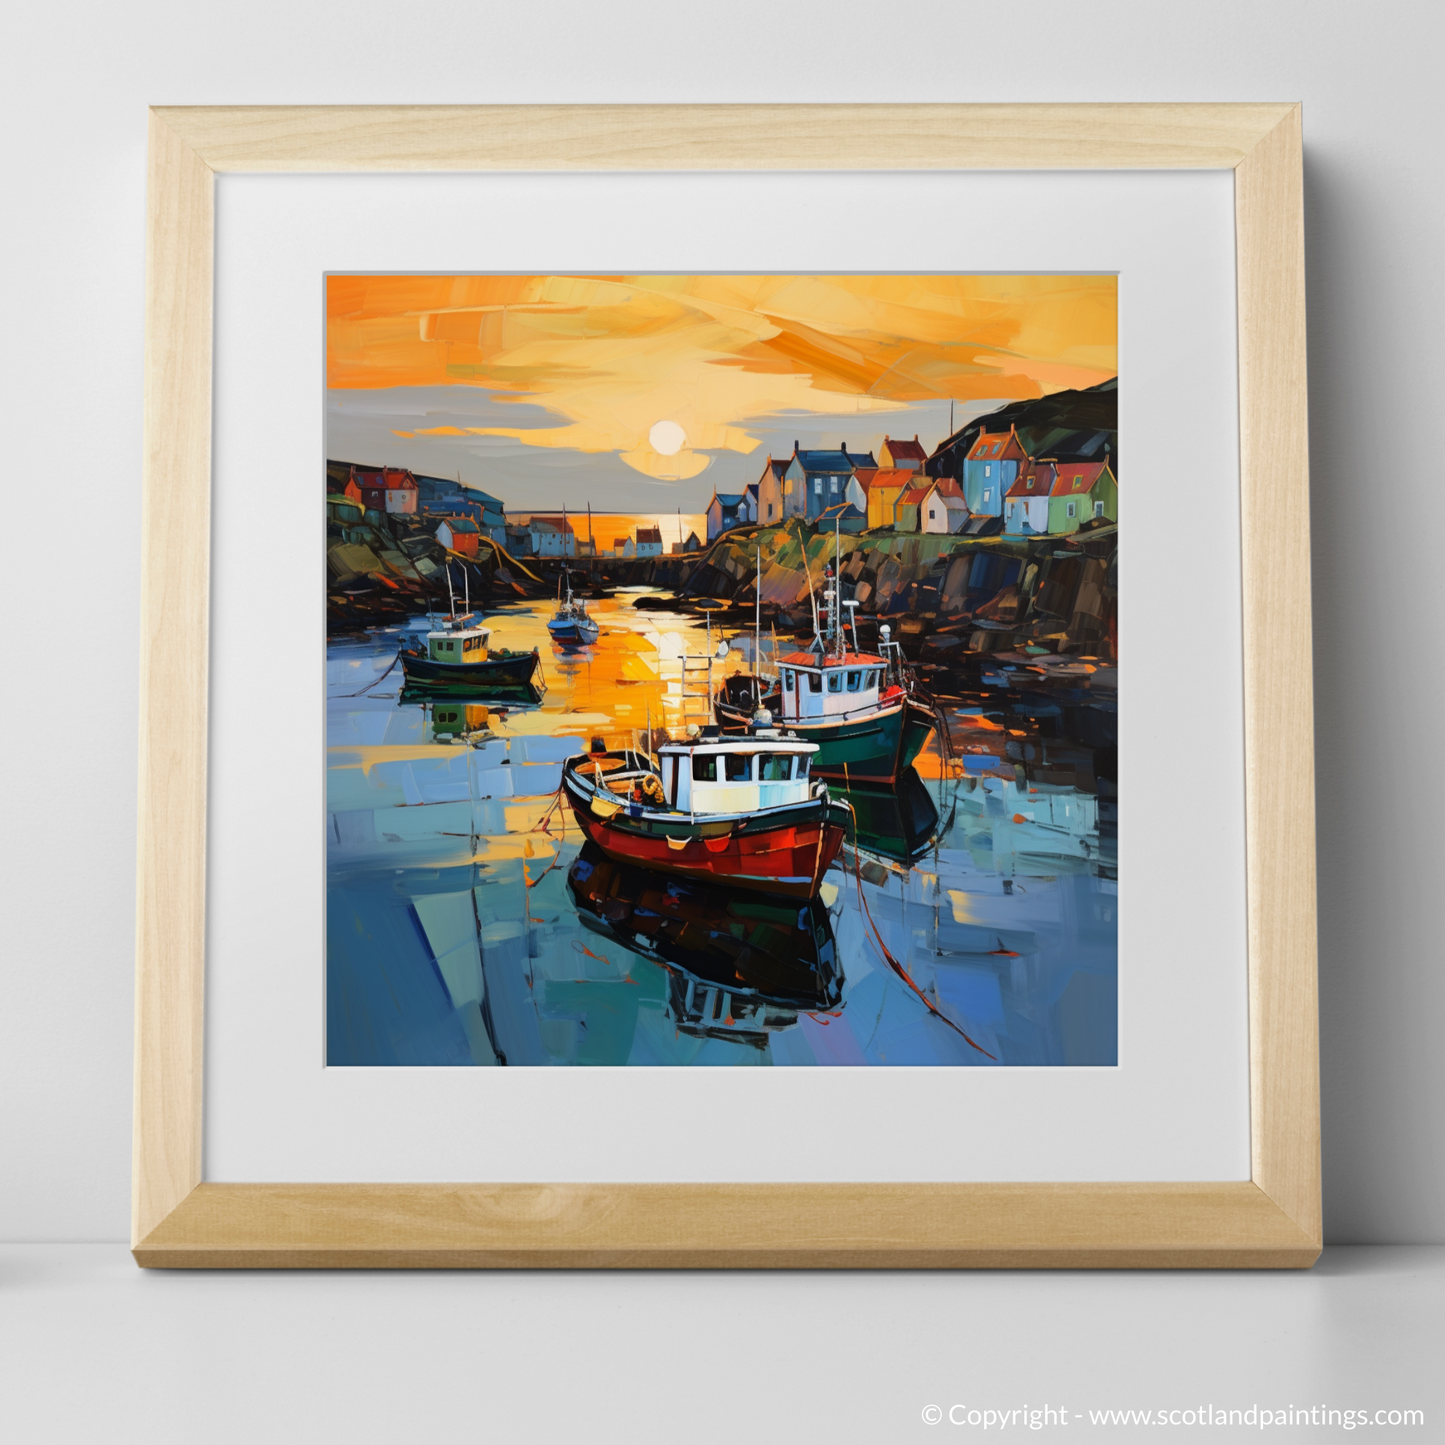 Art Print of Portnahaven Harbour at dusk with a natural frame